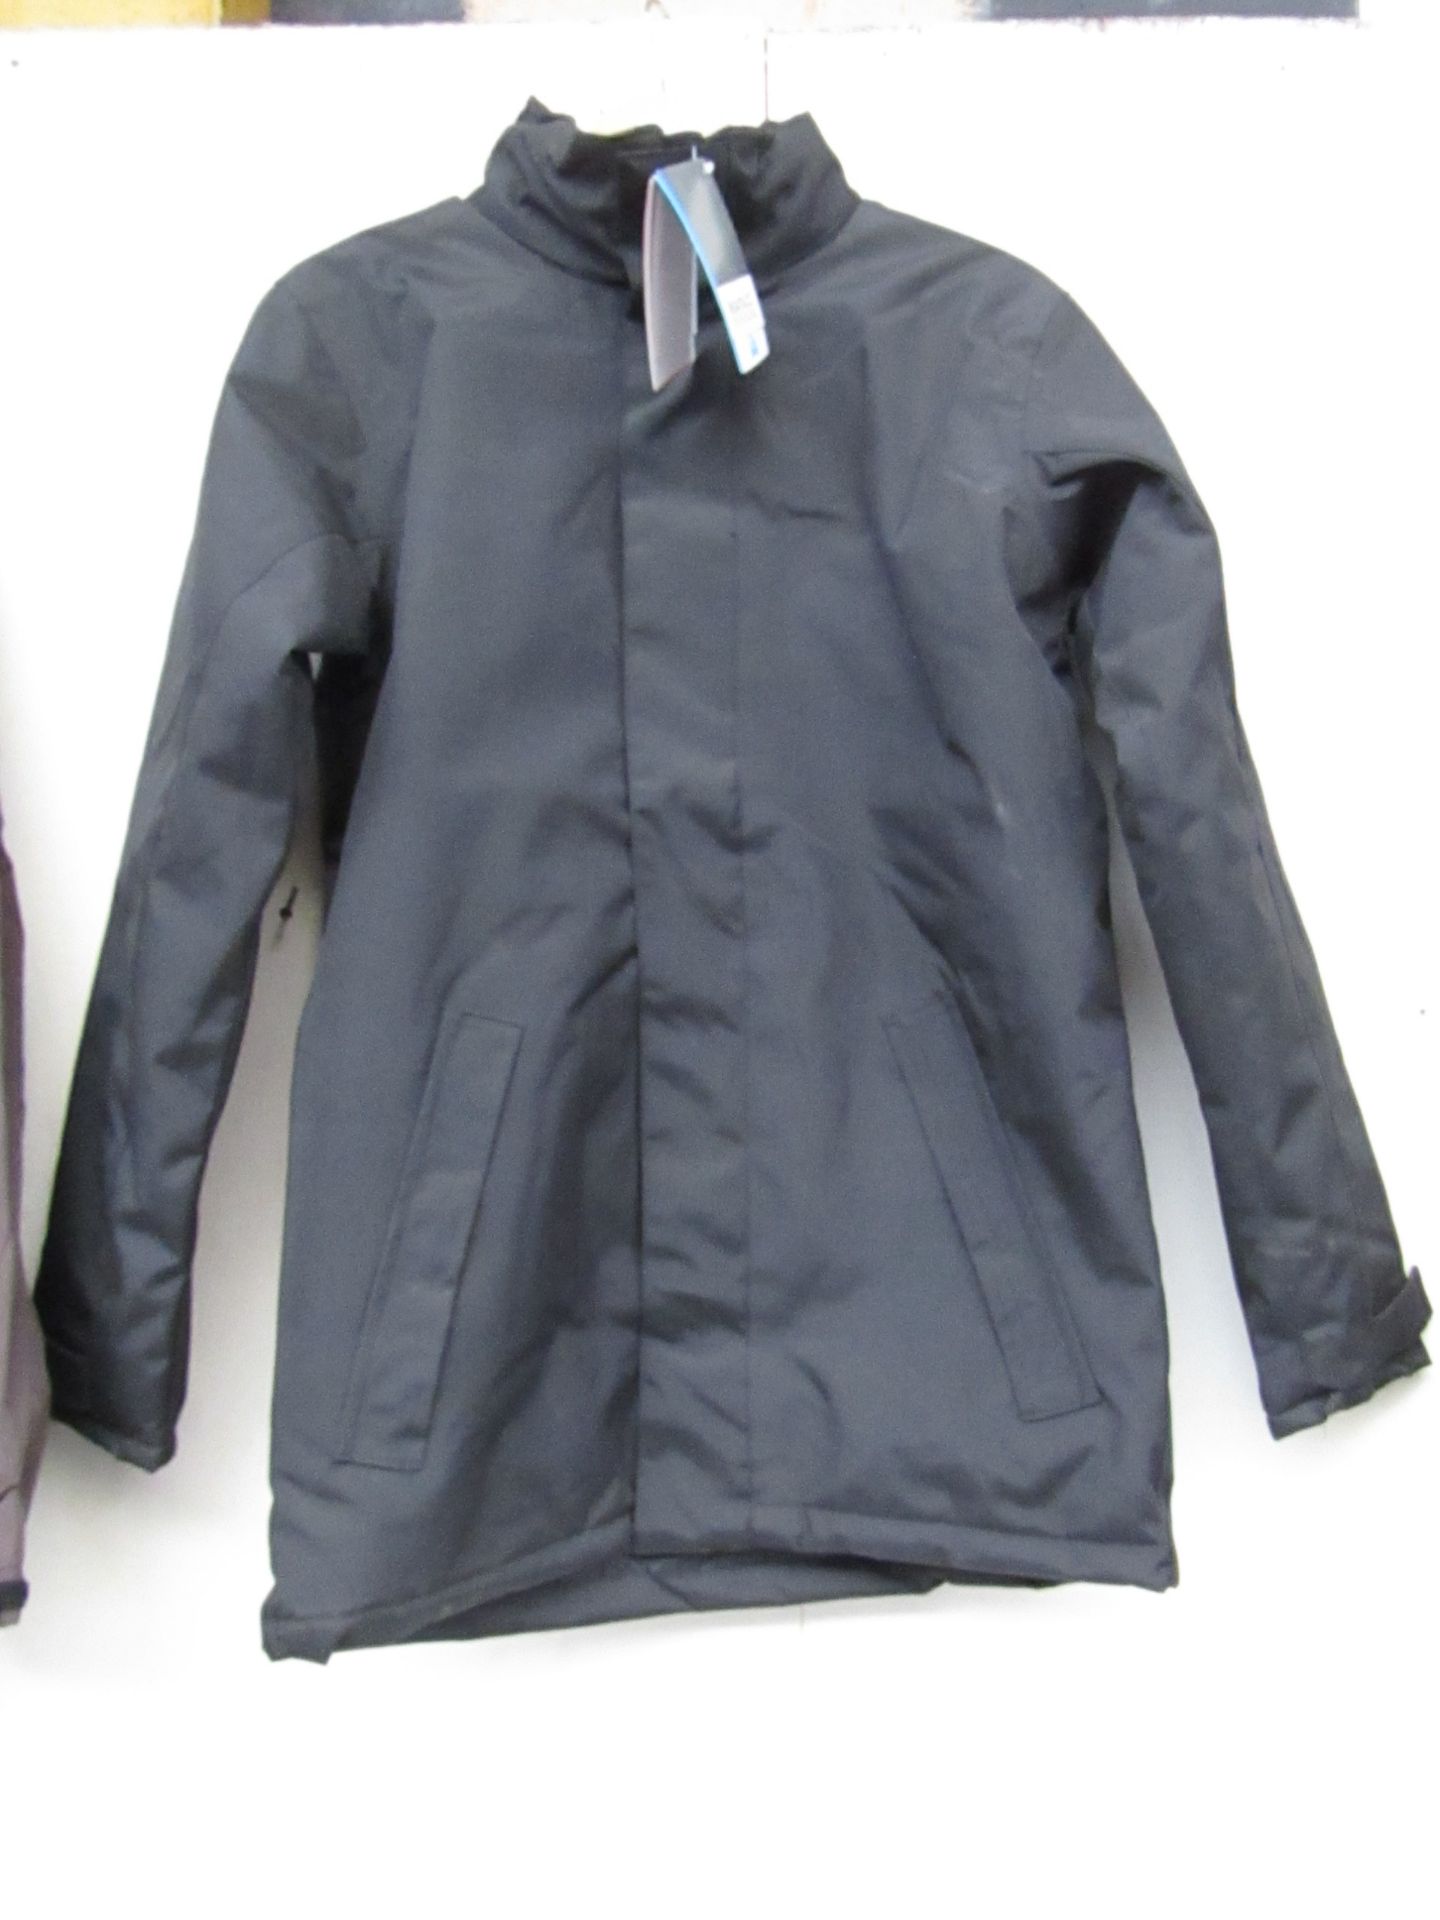 Regatta Hydrafort Black waterproof coat (size S), new in packaging